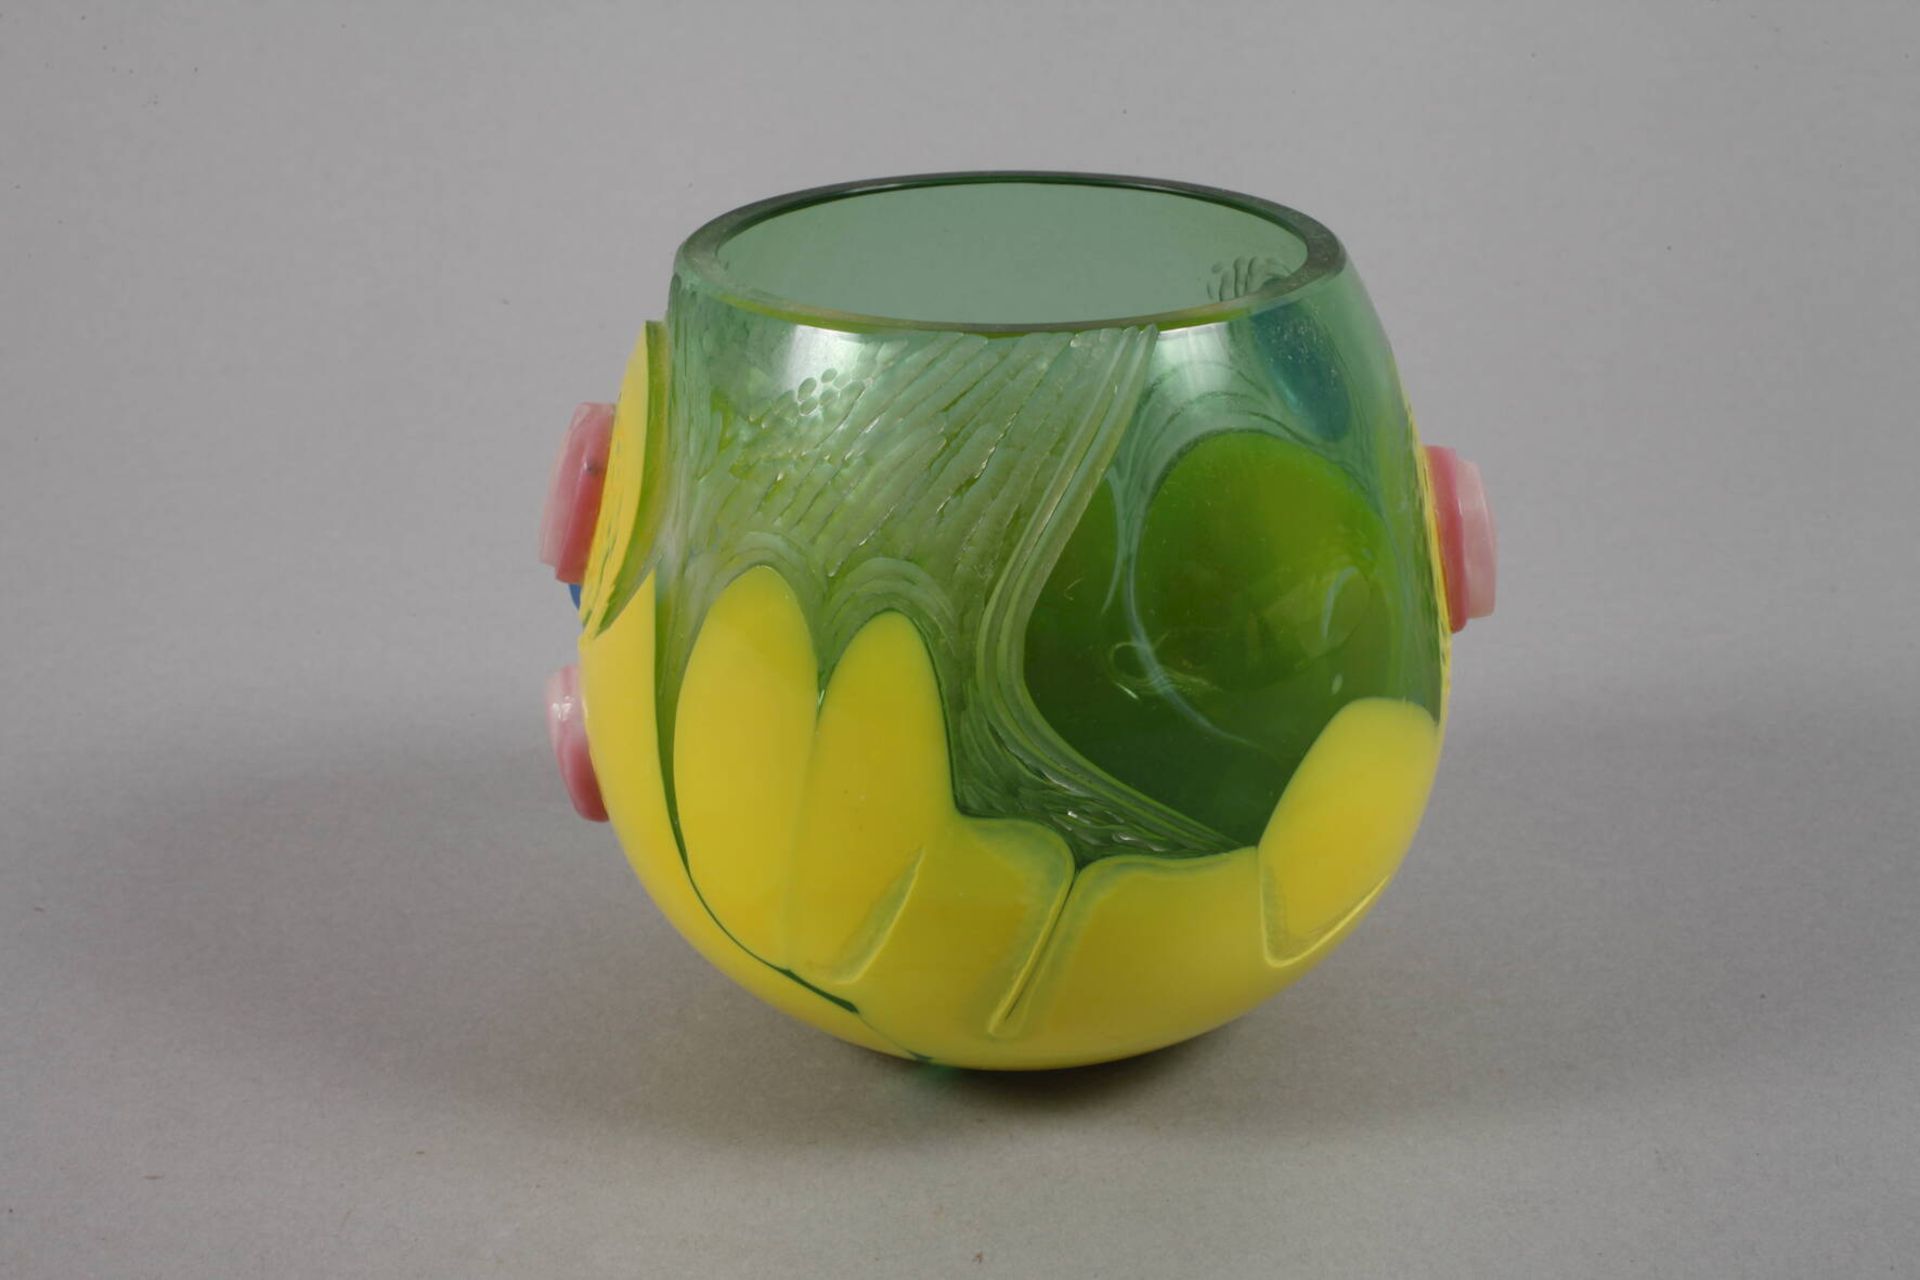 Vase Studioglasdatiert 2000, Herstellermonogramm JV., farbloses Glas, grün und gelb überfangen, - Bild 3 aus 5